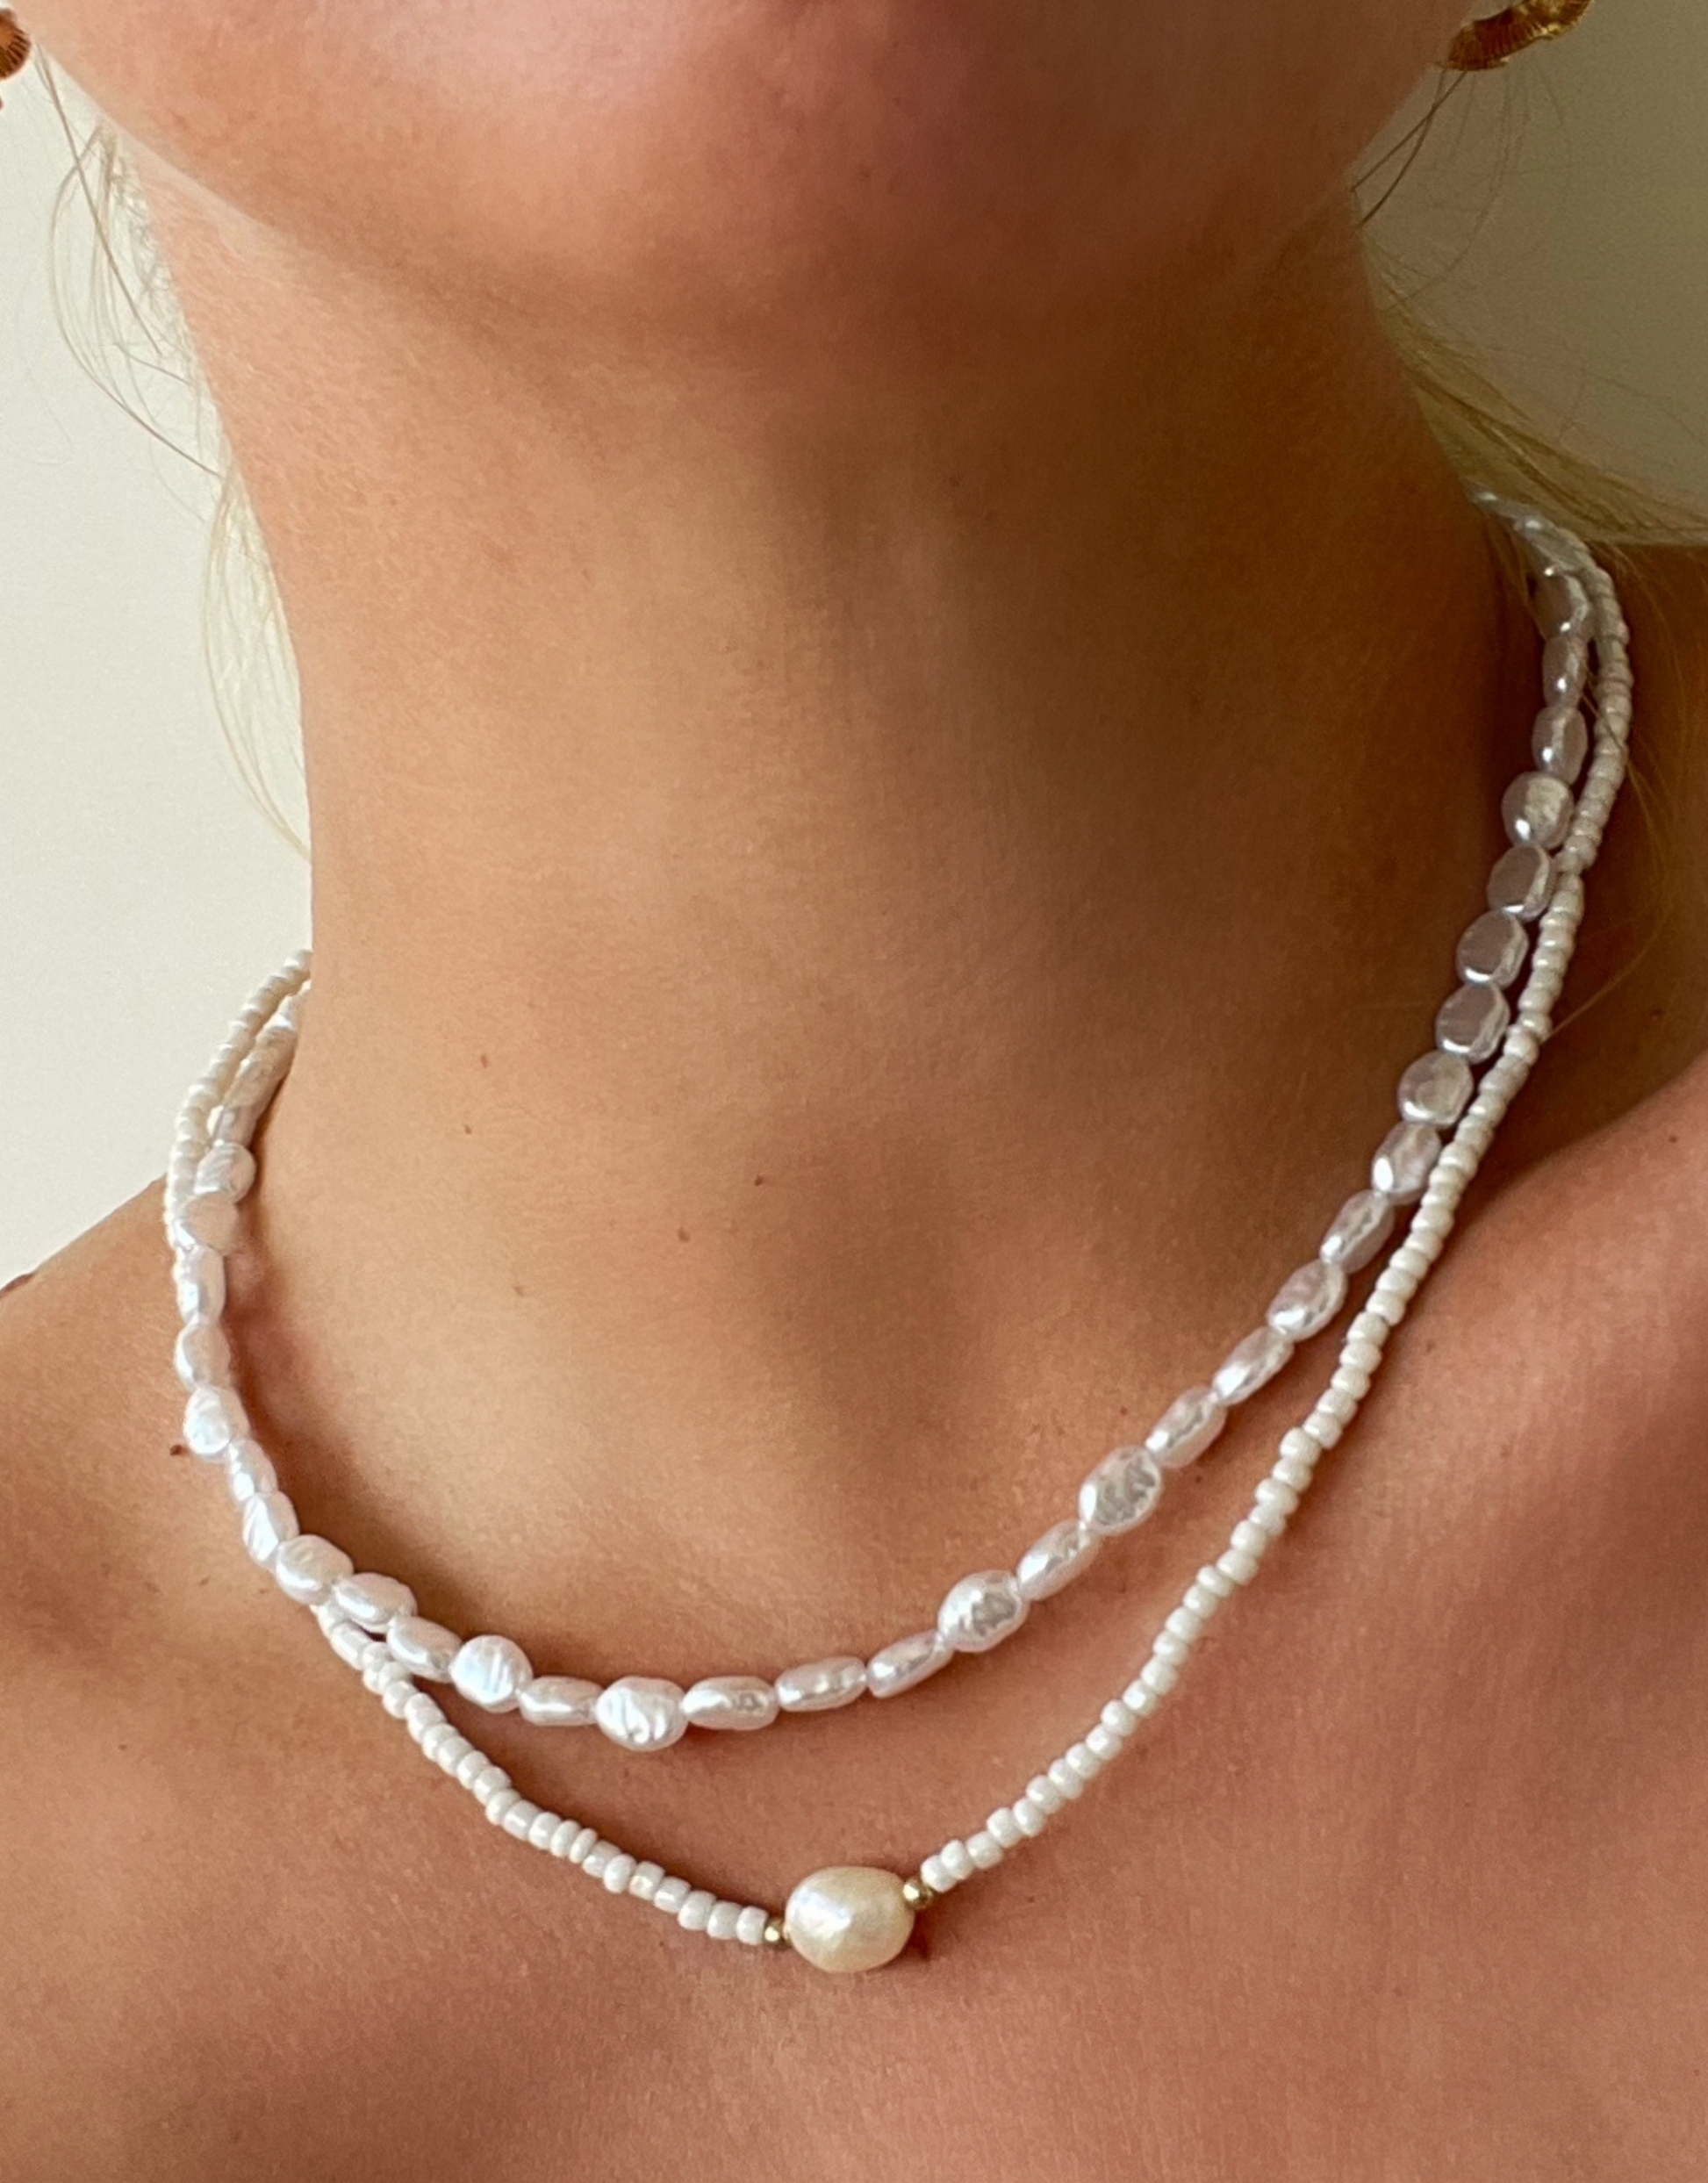 Sød halskæde fyldt med ferskvandsperler.  Denne halskæde er til dig, som elsker, at pifte dit look op med unikke smykker.   Materiale: Rustfri stål, guldbelagt. Perler. 100% nikkelfri.